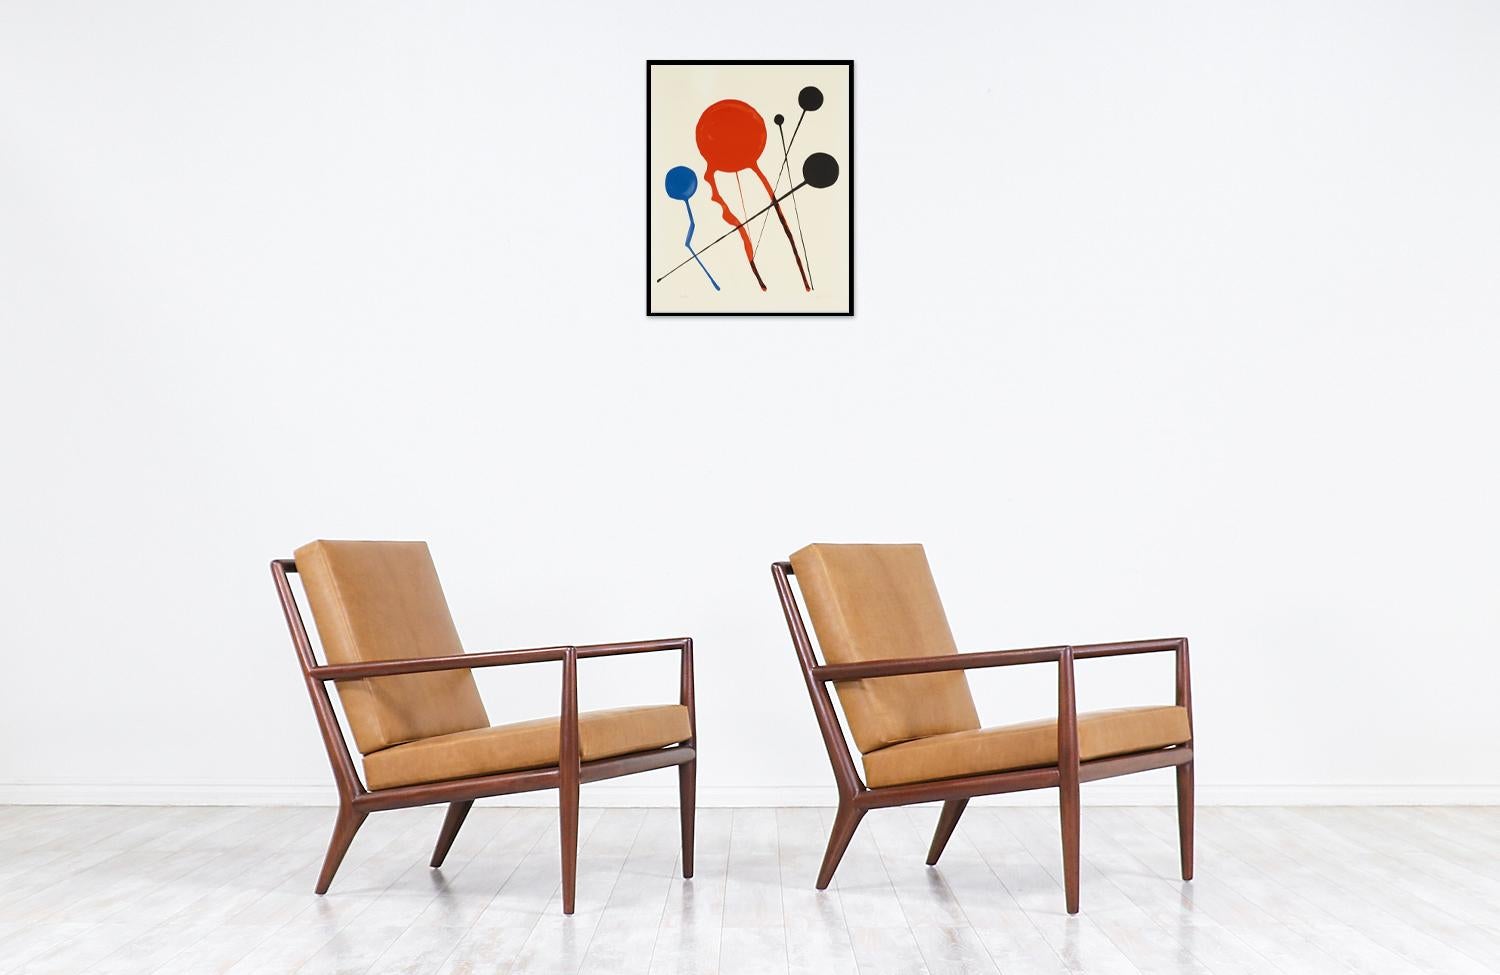 Chaises longues élégantes et modernes conçues par T.H. Robsjohn-Gibbings en collaboration avec la célèbre société Widdicomb Furniture aux États-Unis dans les années 1950. Ces chaises de salon ergonomiques du milieu du siècle sont dotées d'un cadre